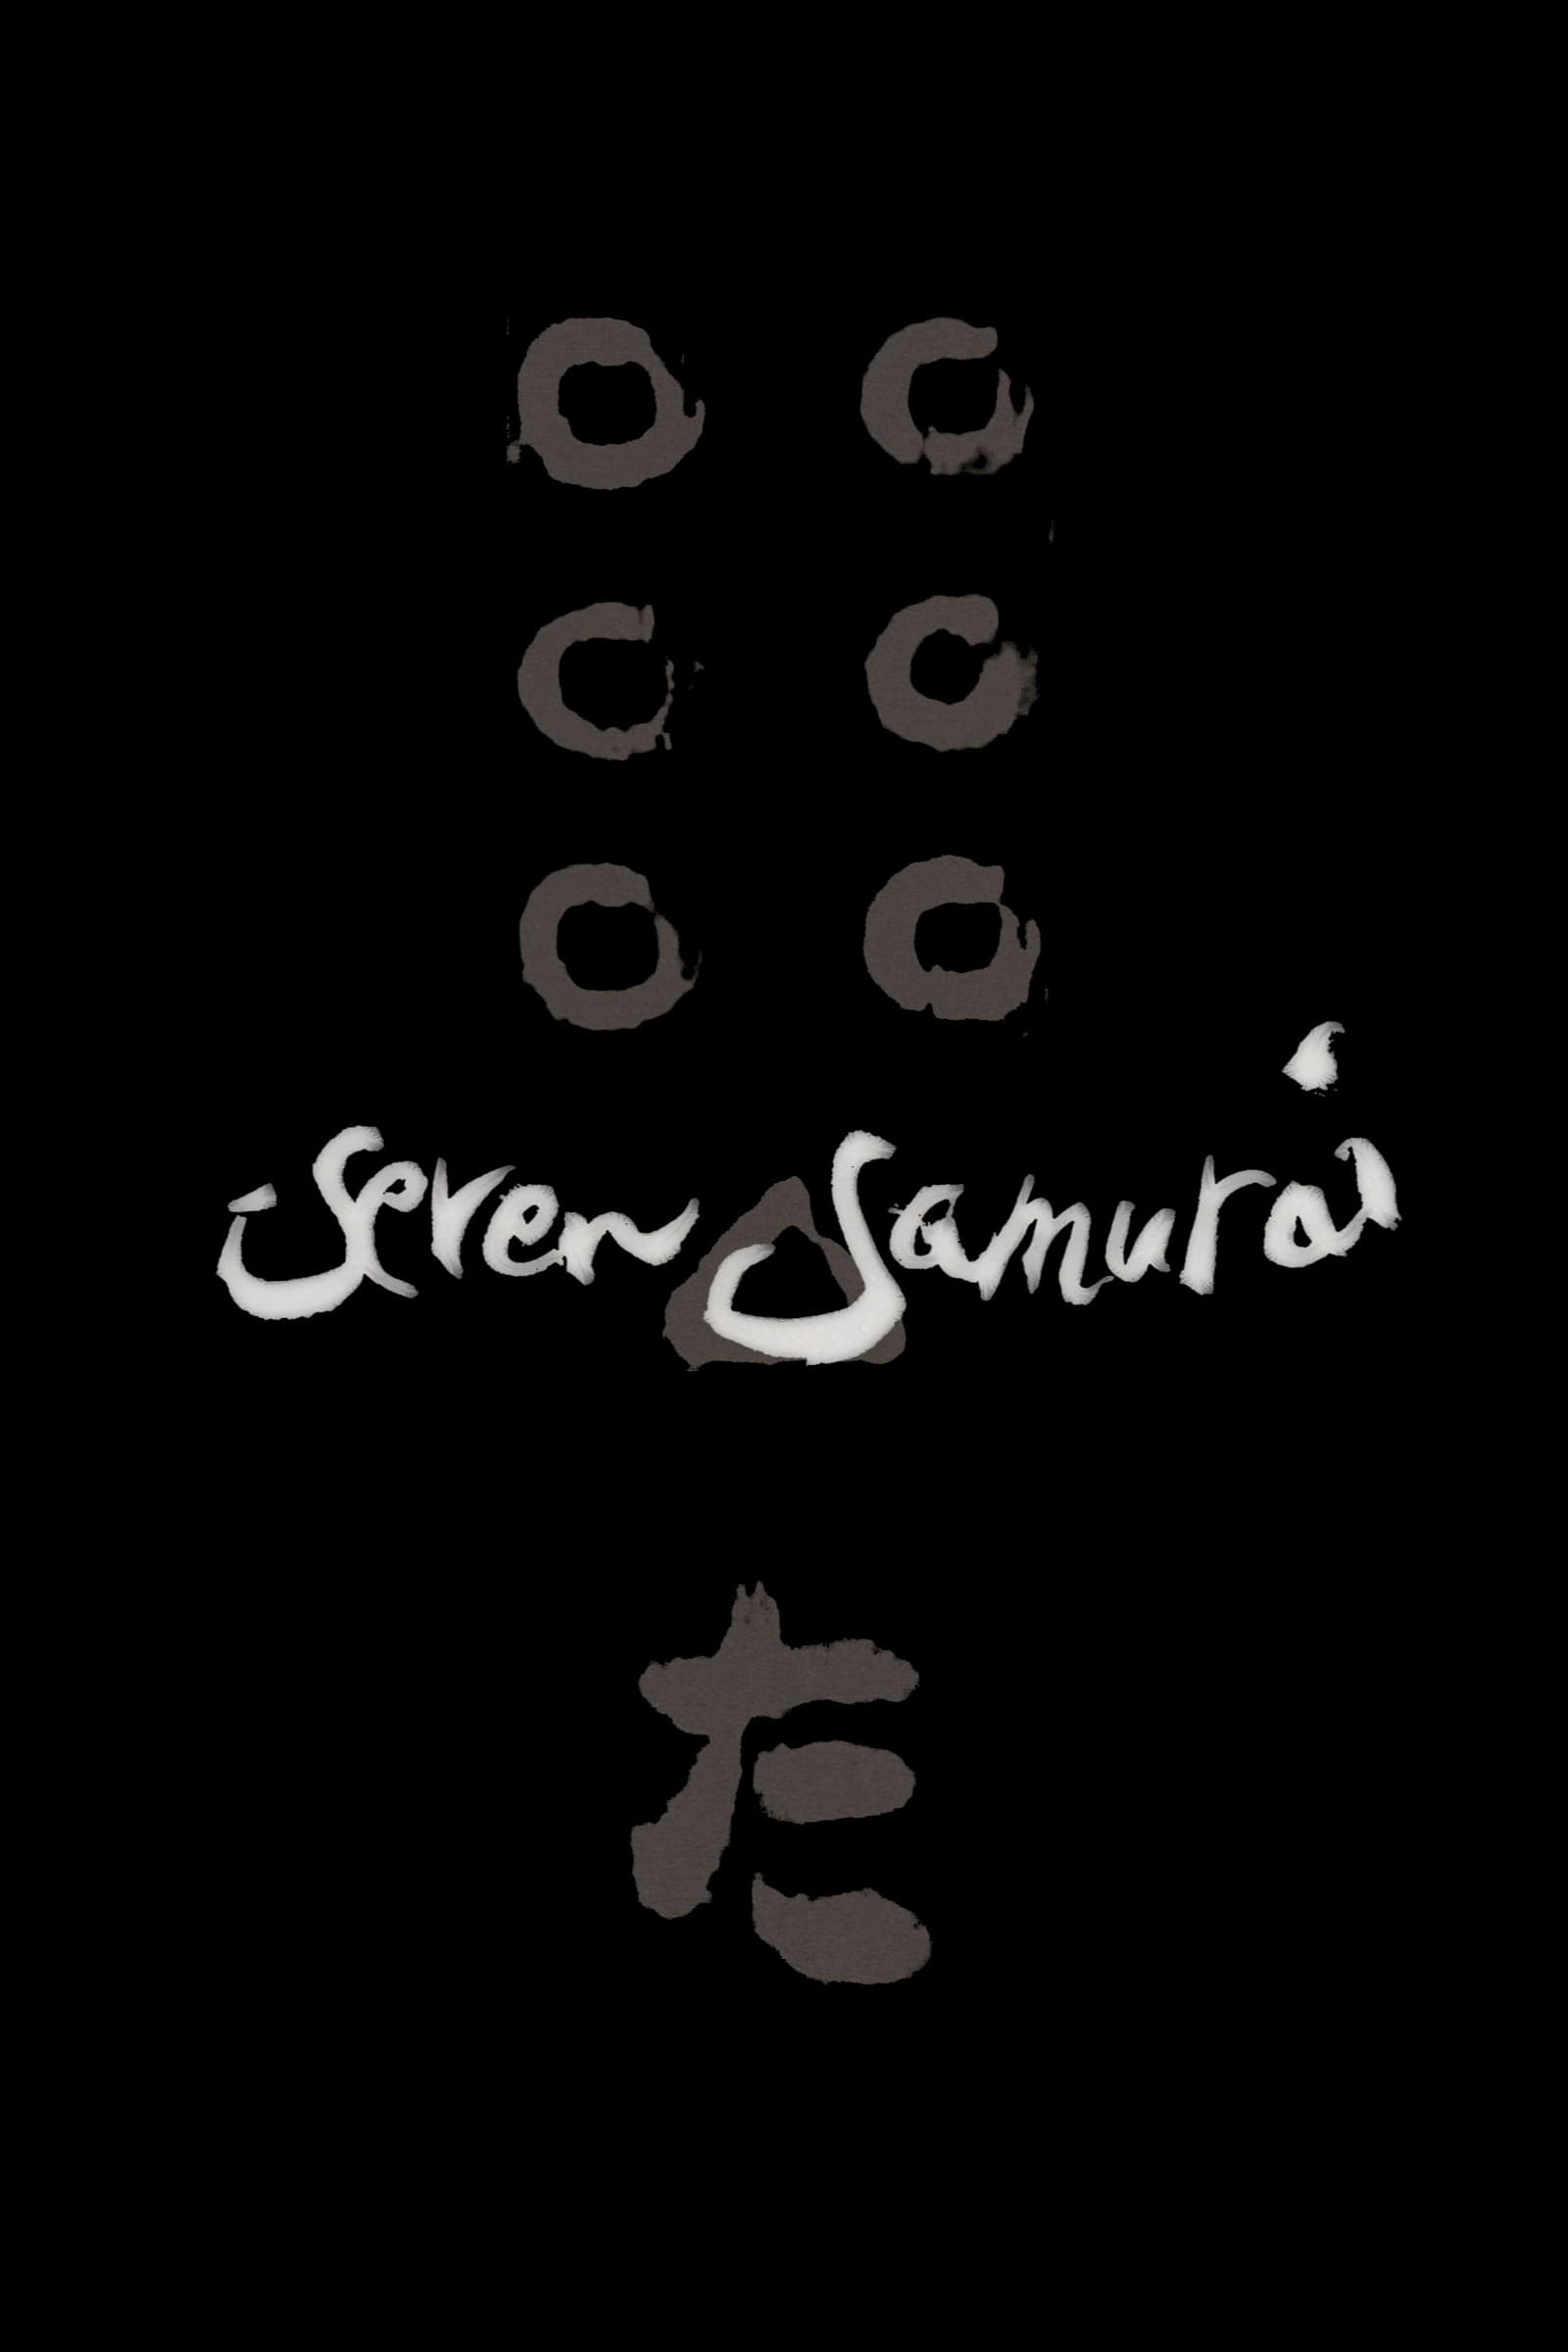 Les Sept Samouraïs